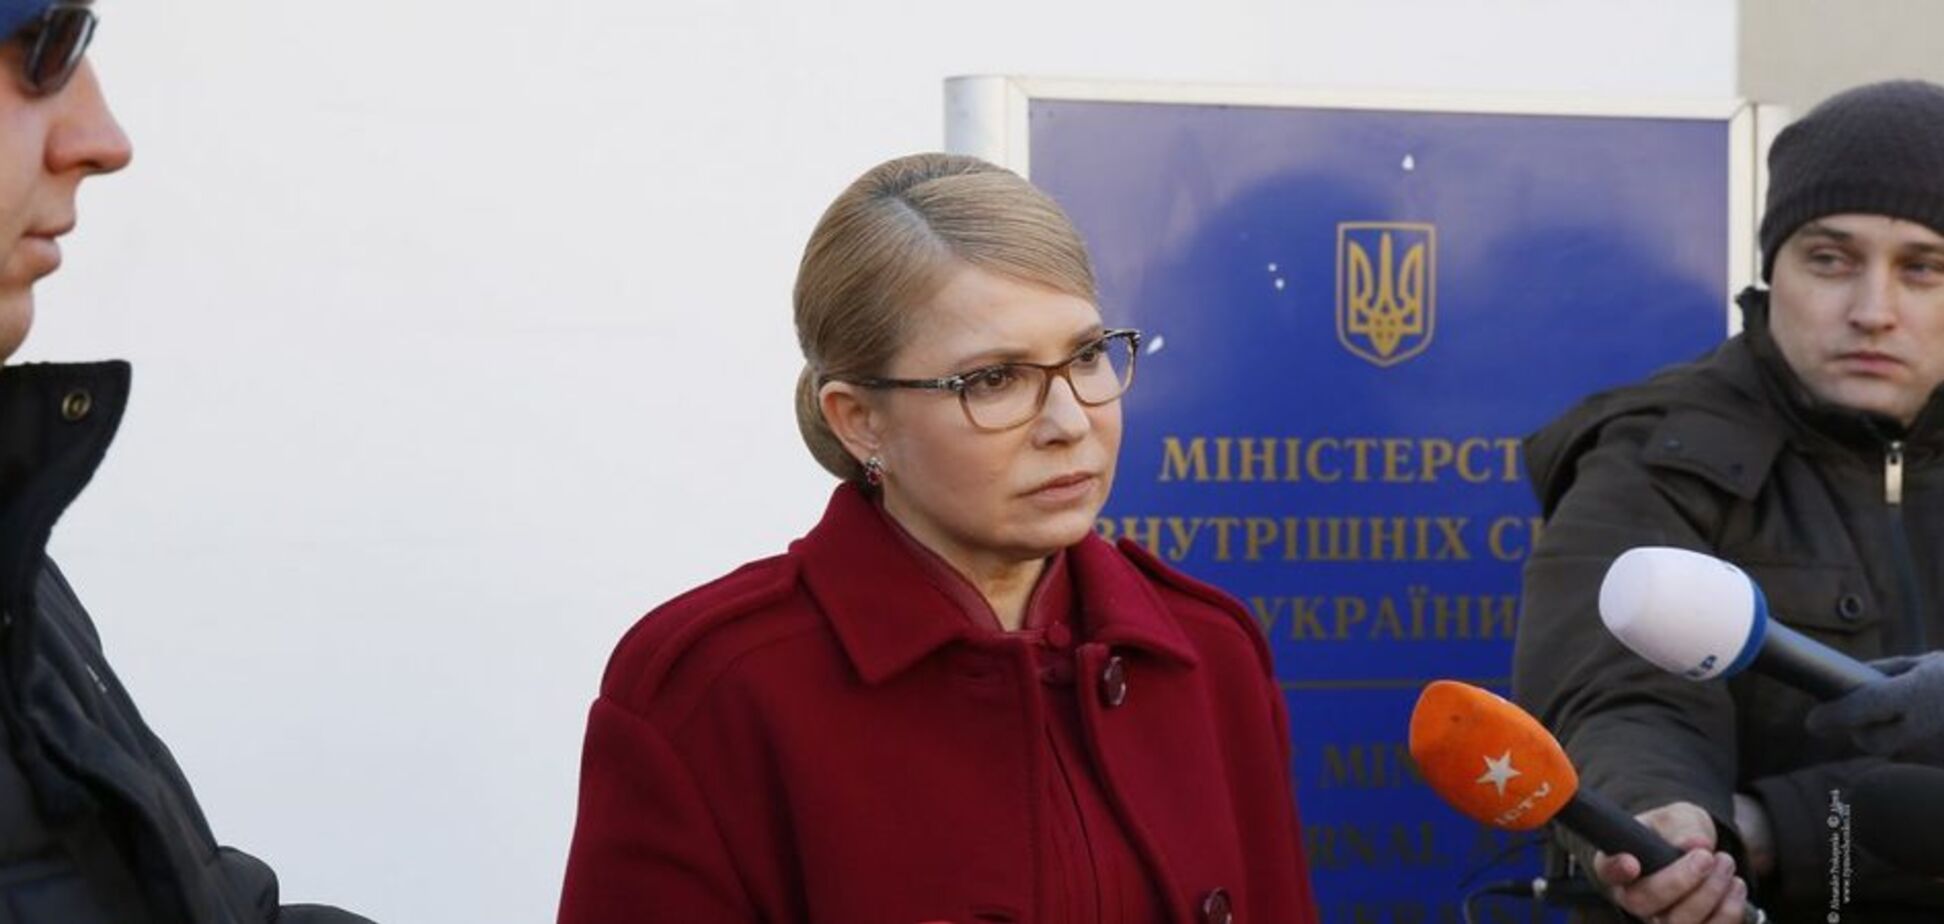 Тимошенко: мы сделаем невозможными фальсификации выборов властью